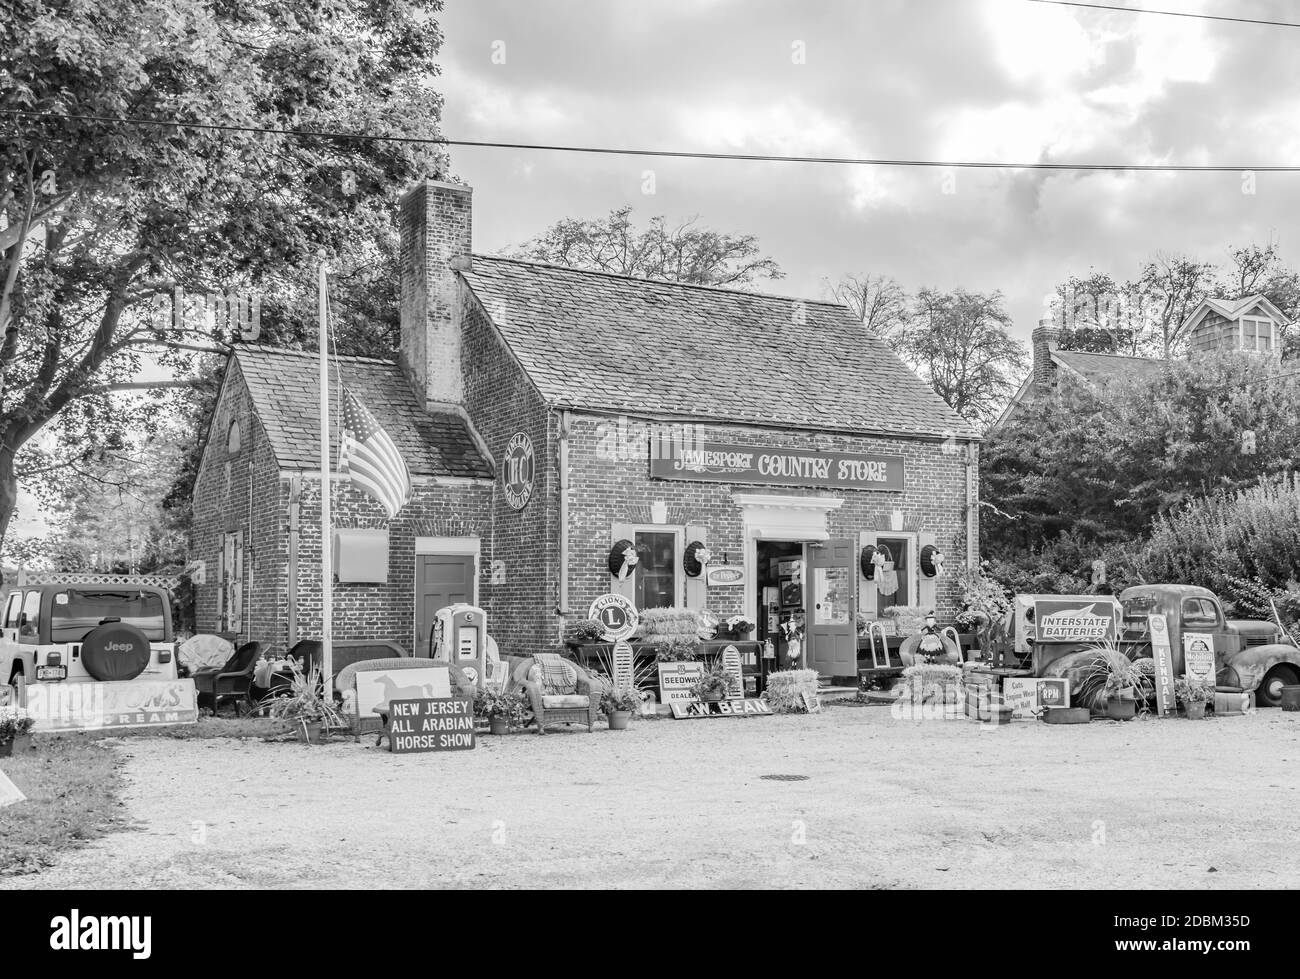 Image en noir et blanc du Jamesport Country Store à Jamesport long Island, NY Banque D'Images